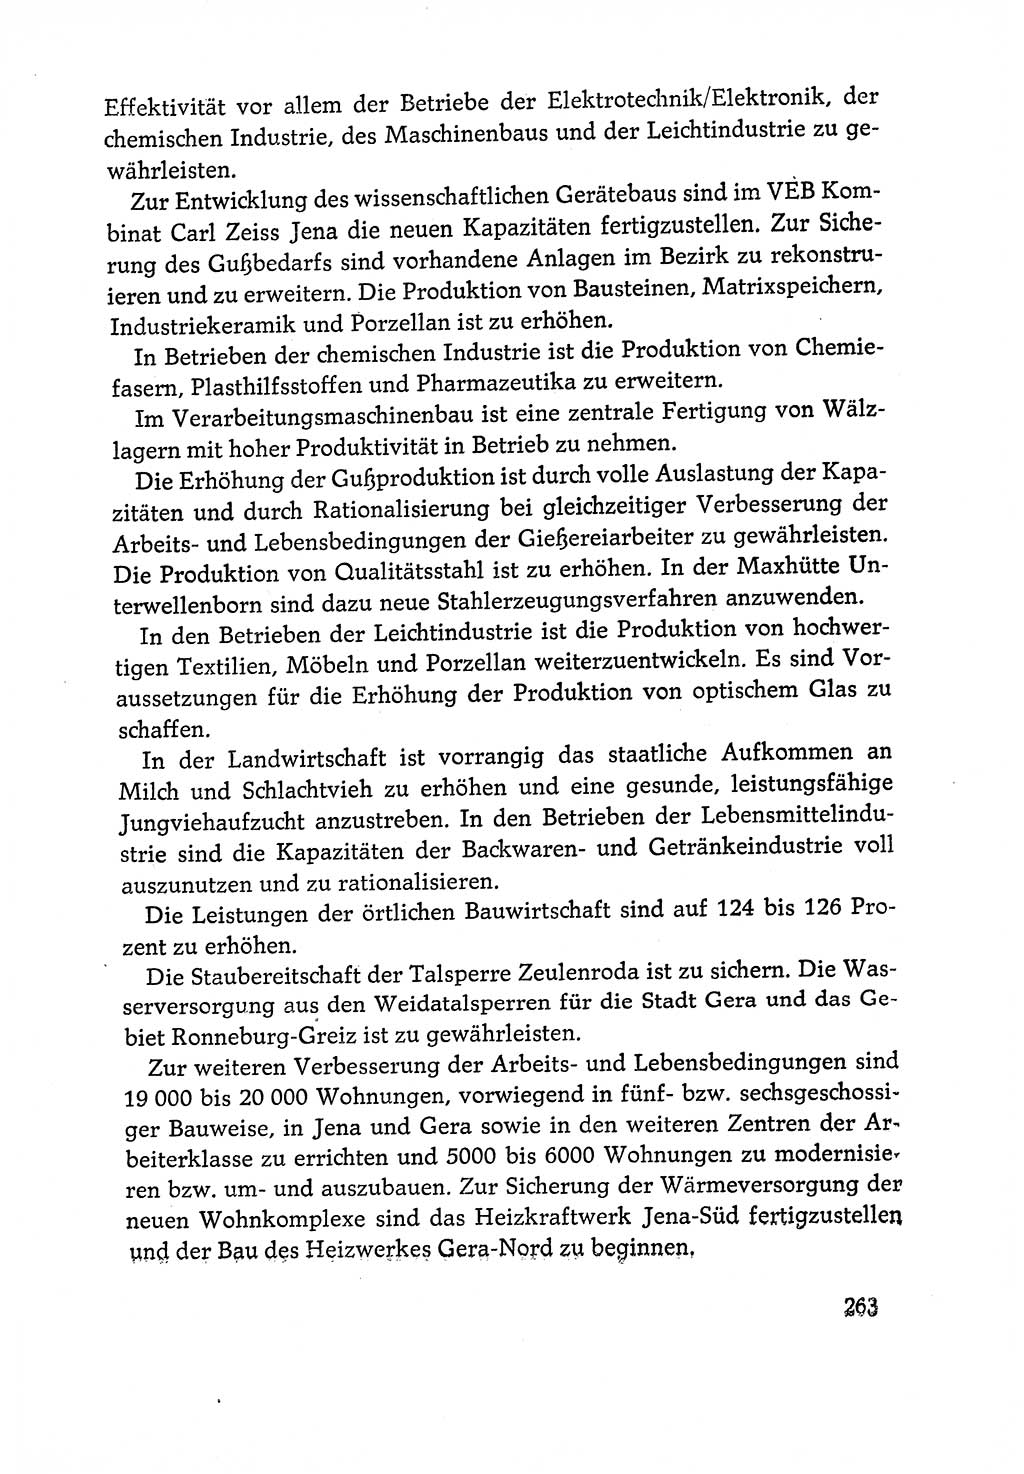 Dokumente der Sozialistischen Einheitspartei Deutschlands (SED) [Deutsche Demokratische Republik (DDR)] 1970-1971, Seite 263 (Dok. SED DDR 1970-1971, S. 263)